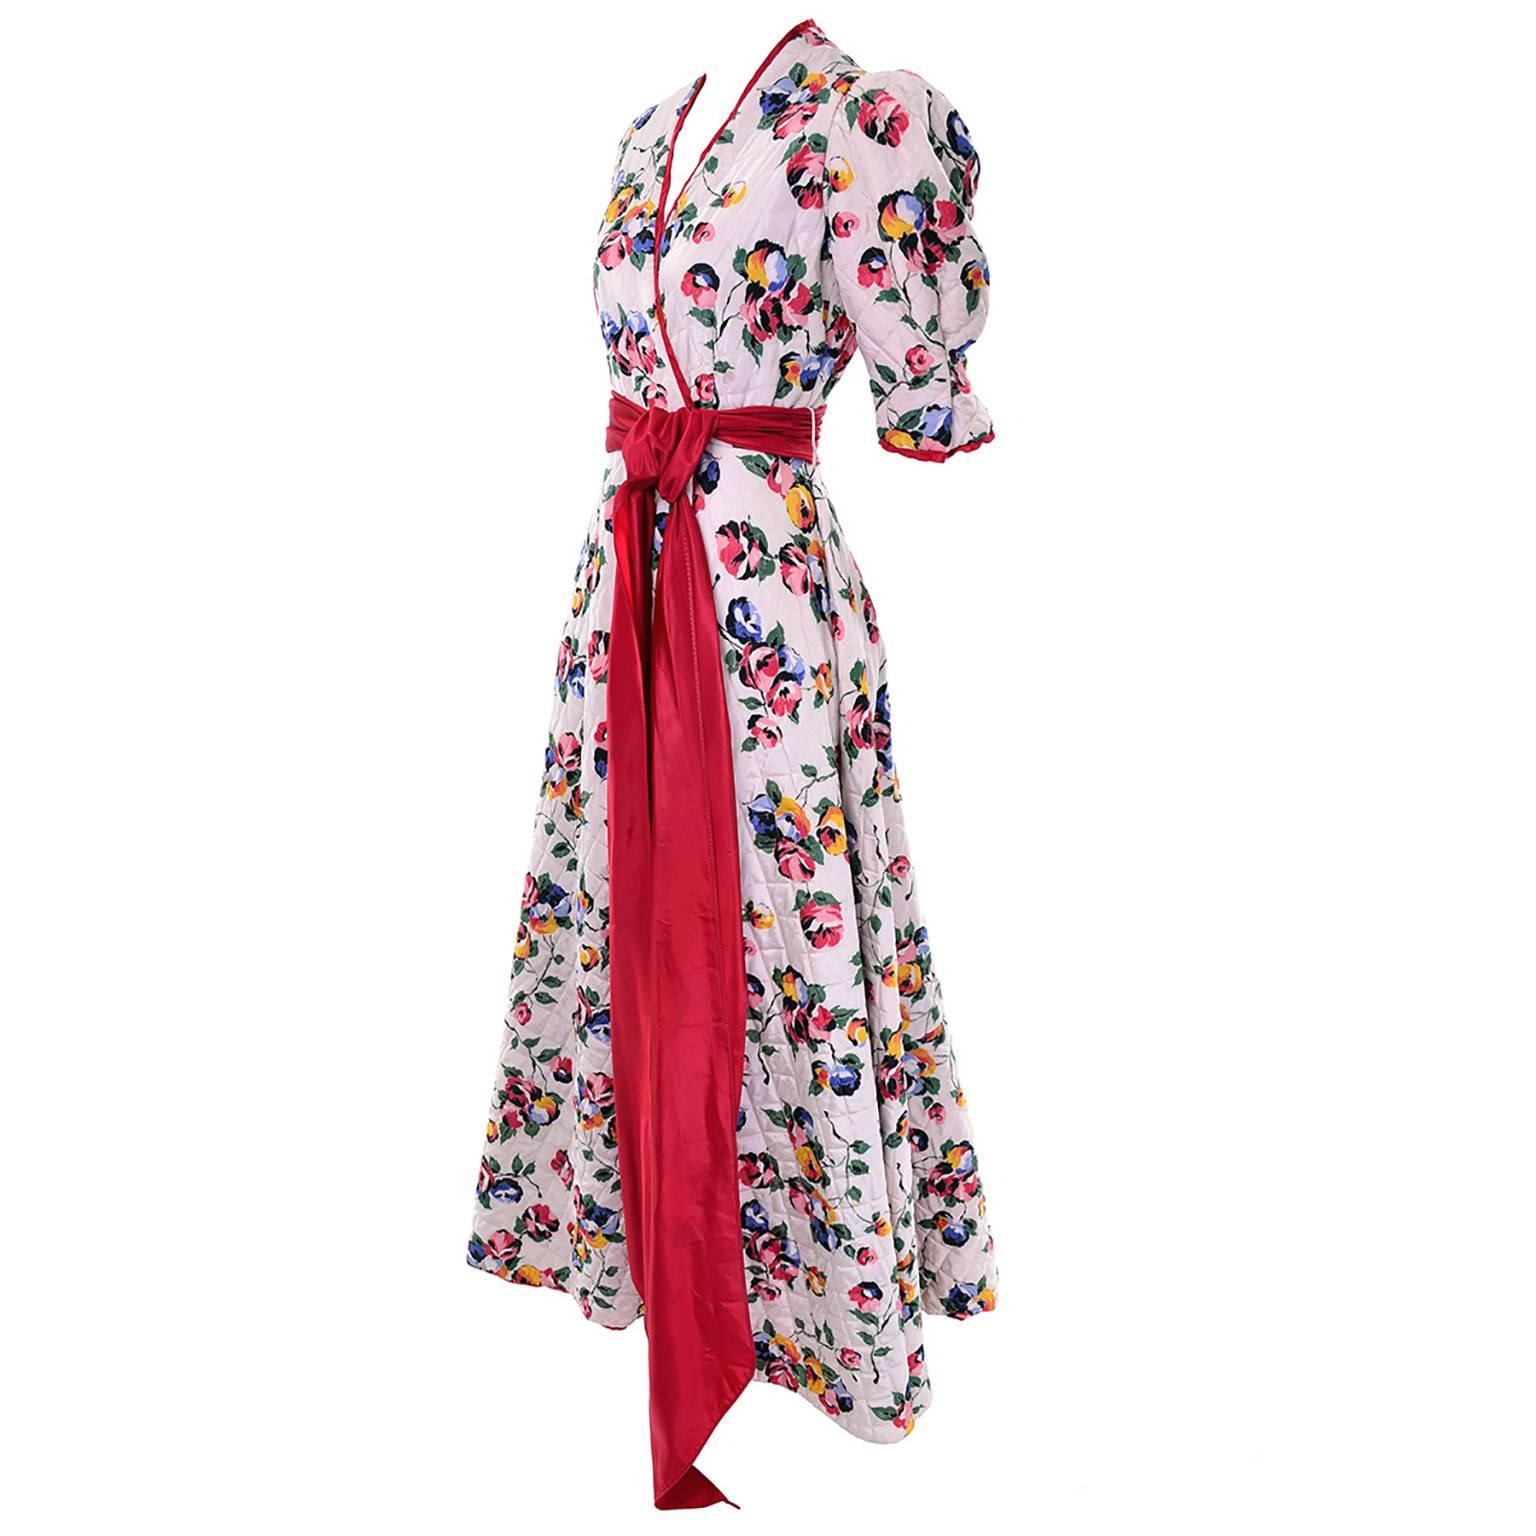 Ce manteau d'intérieur vintage matelassé à fleurs, rose pâle, des années 1940 est superbe en personne. Cette magnifique robe est doublée de rouge, bordée de rouge et munie d'une magnifique ceinture rouge.  Il s'agit d'une taille Small et il est en